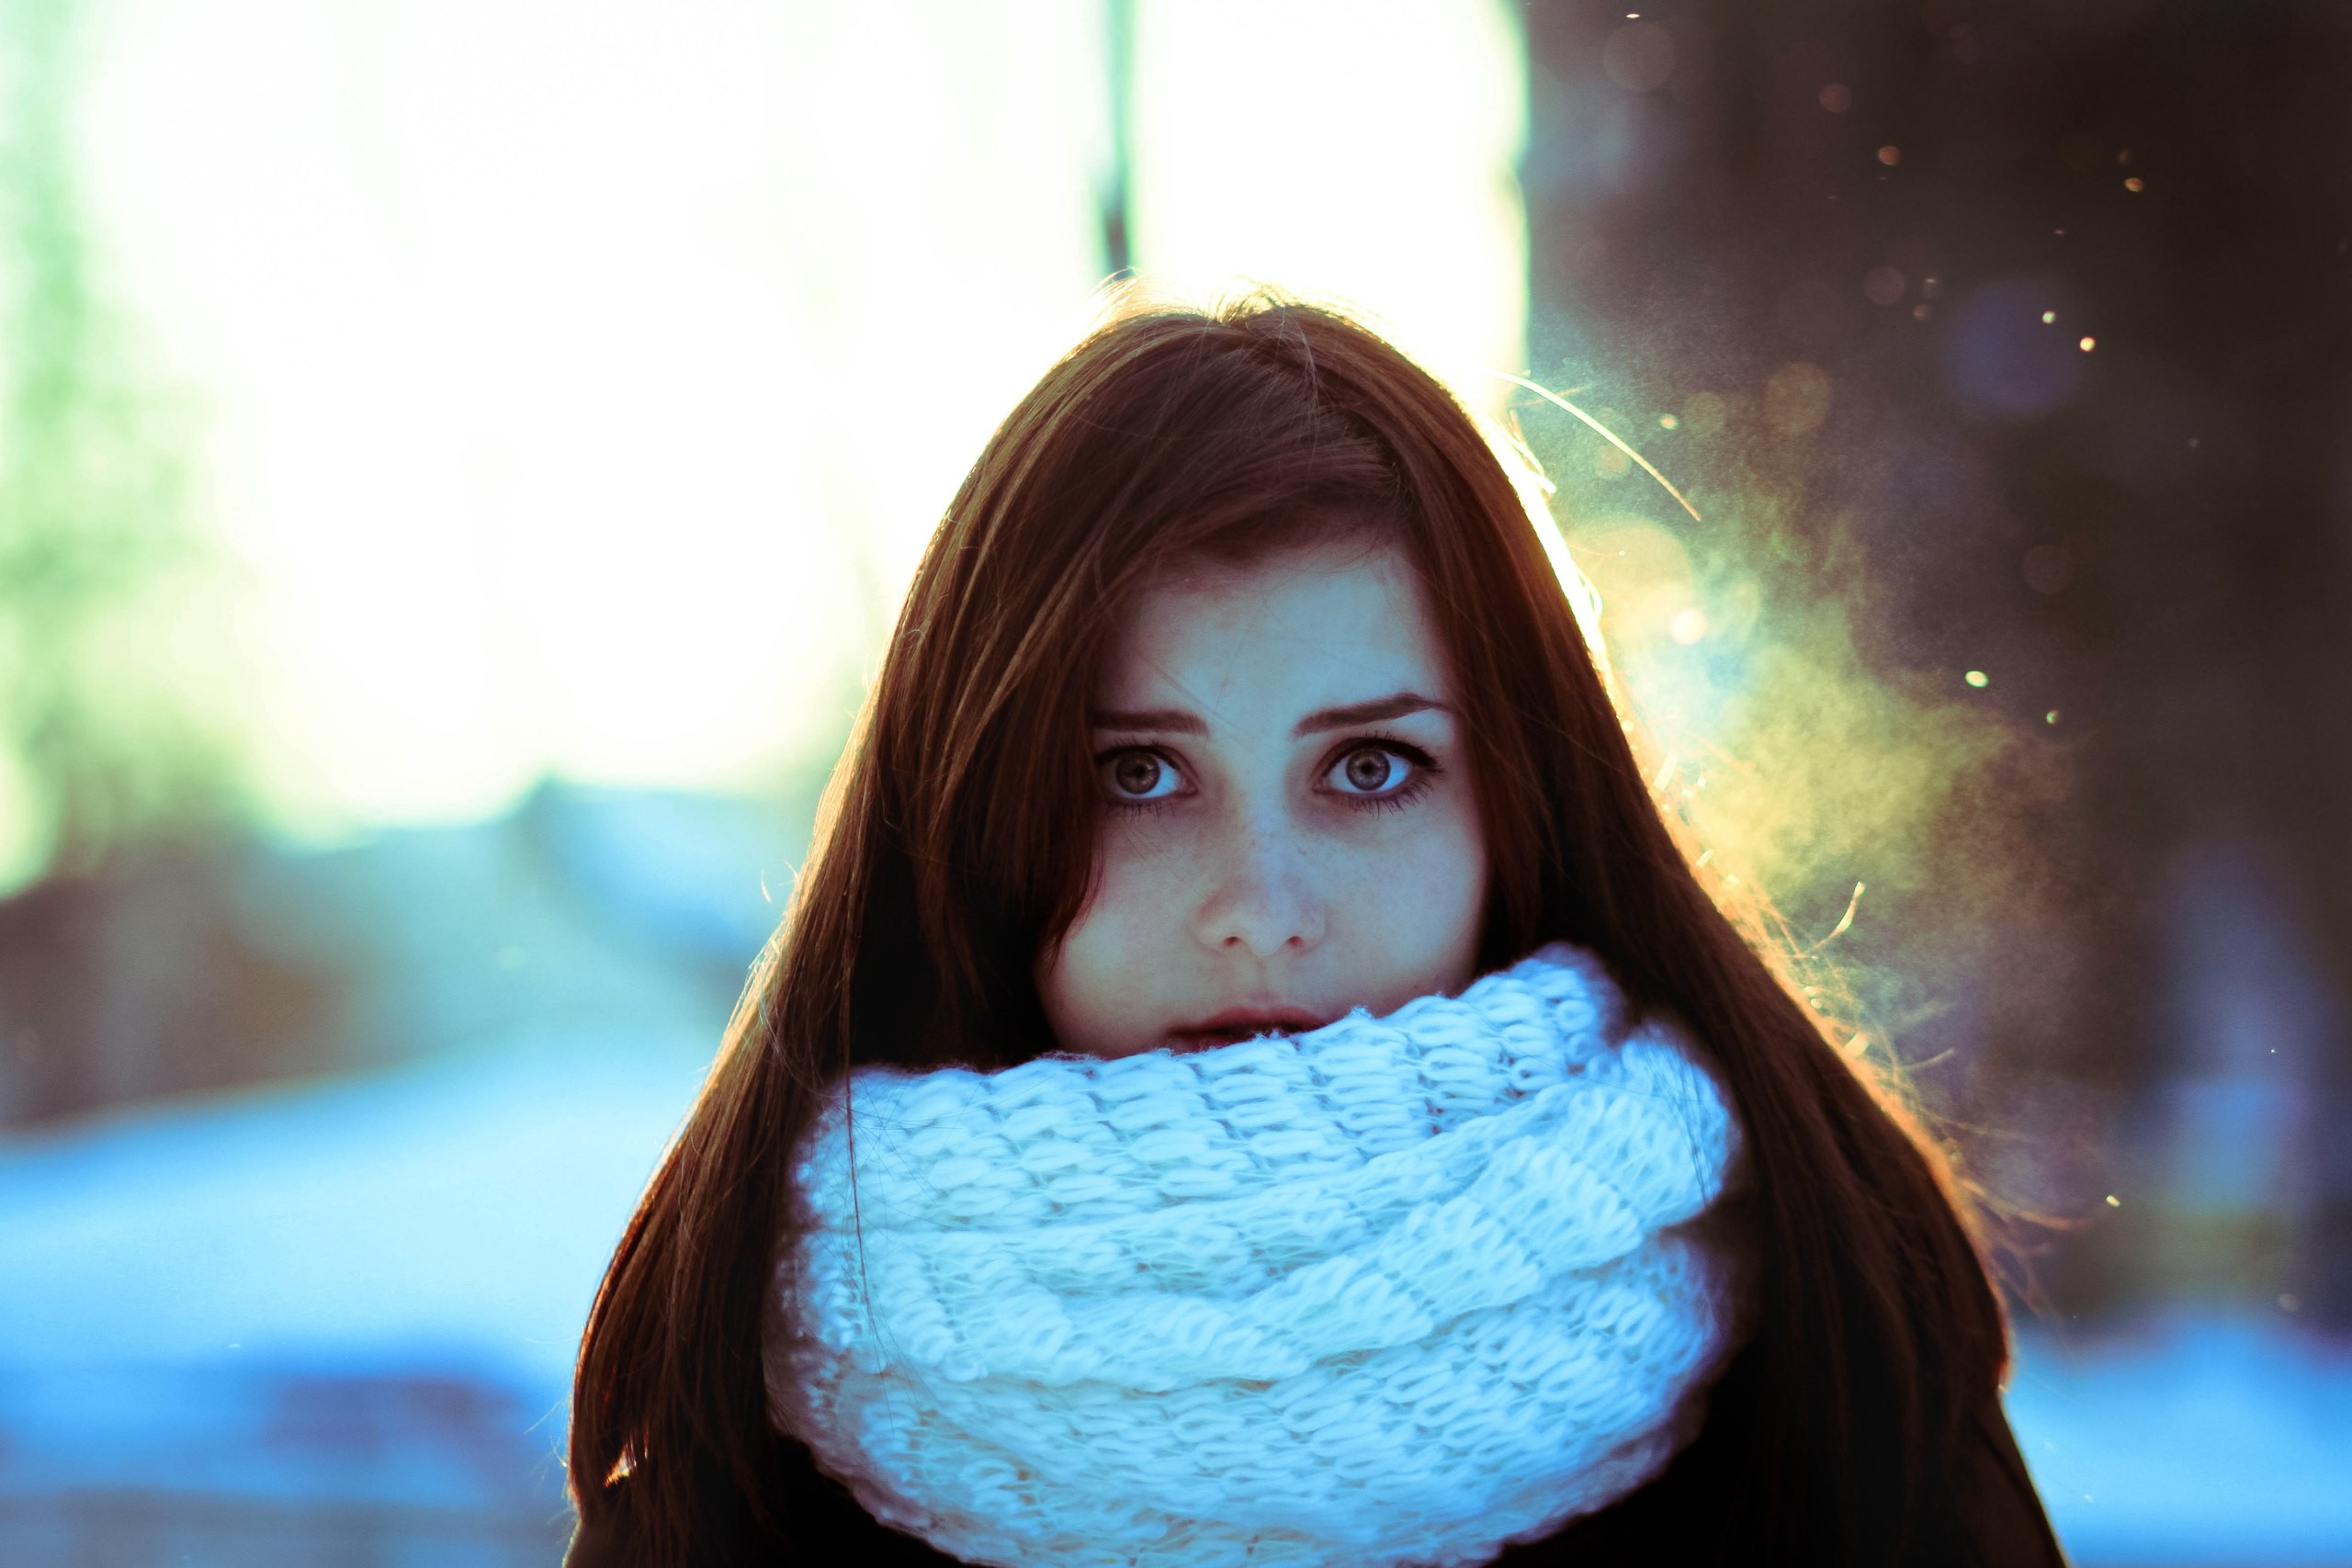 Женщина в шарфе зимой